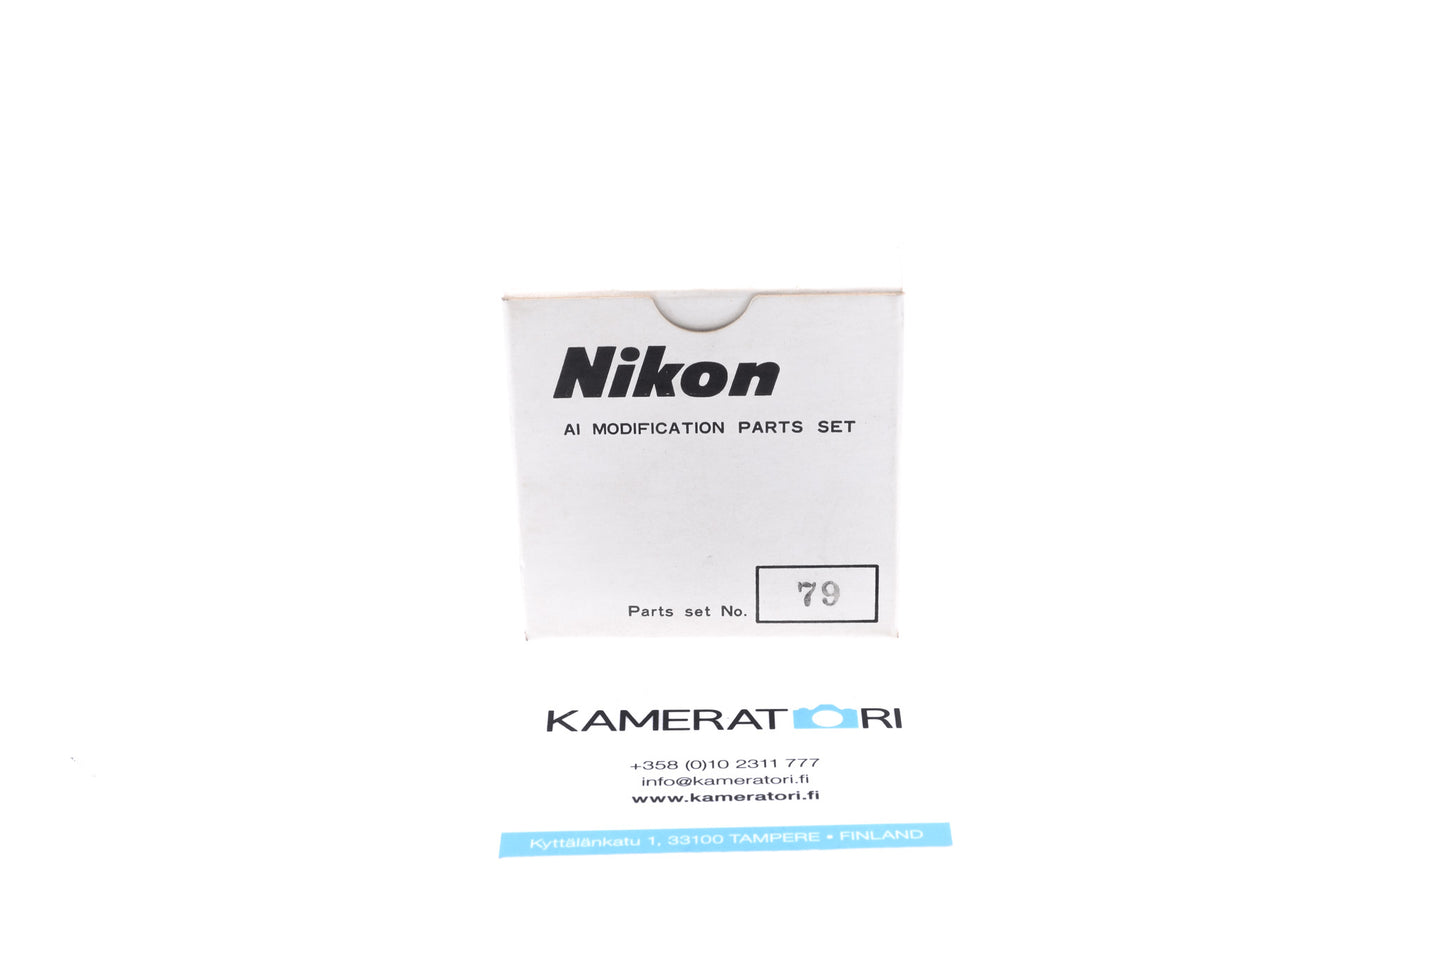 Nikon AI Conversion Kit 79 for 28-45mm f4.5